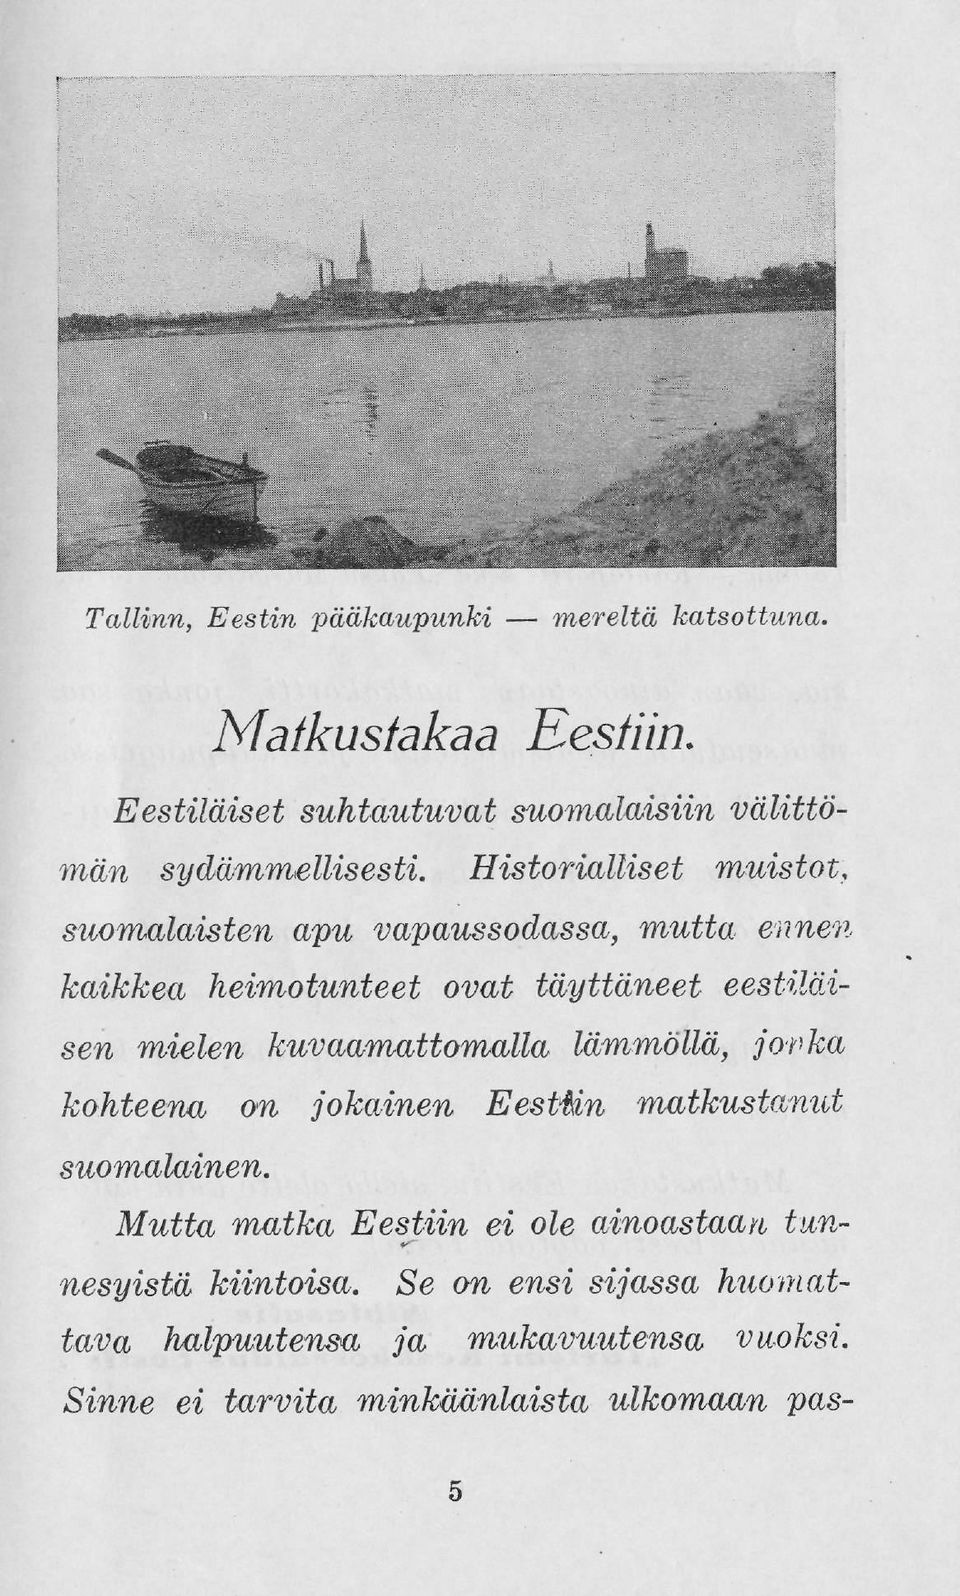 Historialliset muistot, suomalaisten apu vapaussodassa, mutta ennem kaikkea heimotunteet ovat täyttäneet eestiläisen mielen